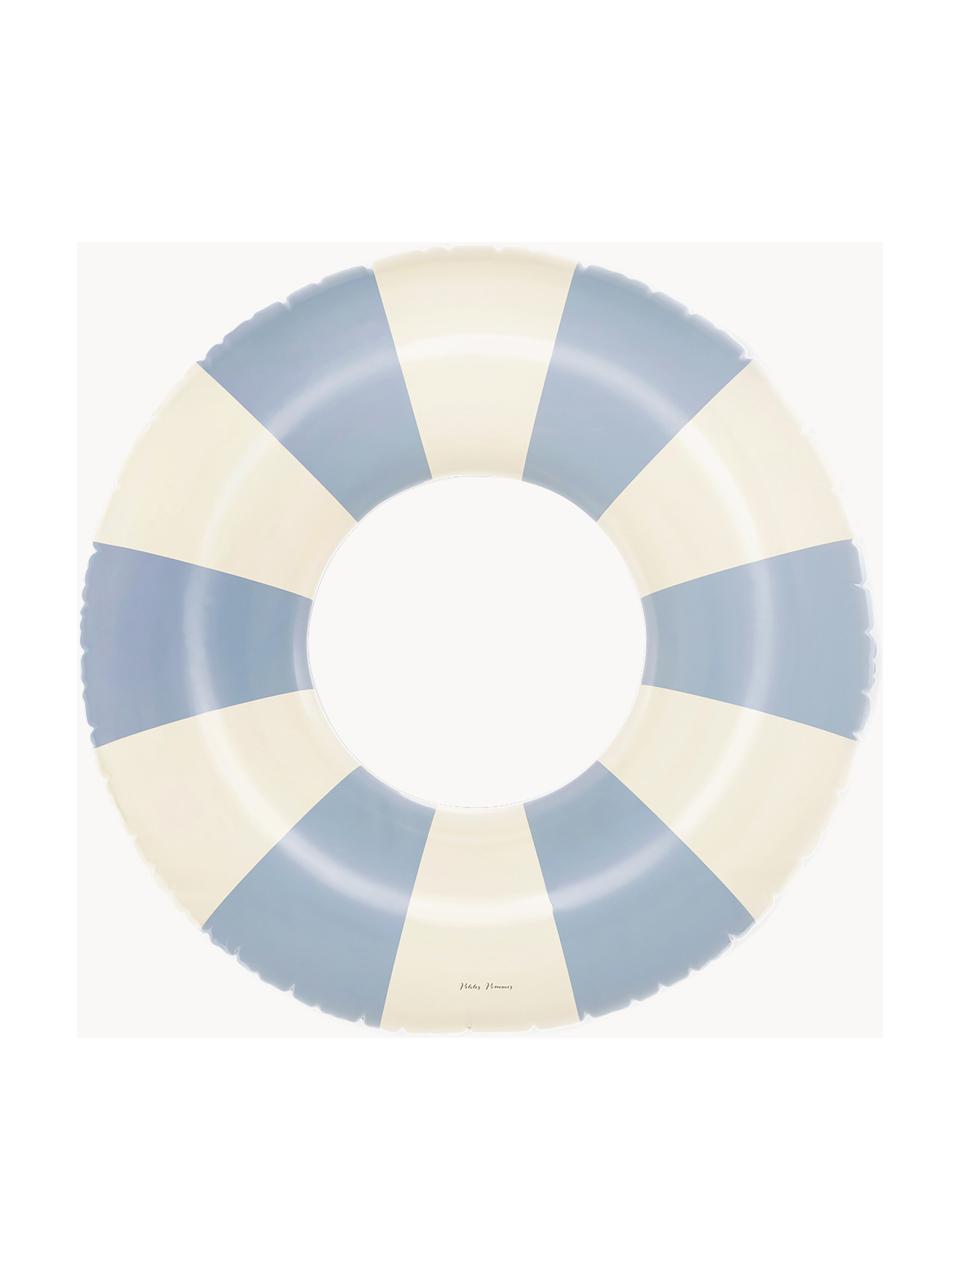 Bouée de natation artisanale Céline, PVC, Bleu ciel, blanc cassé, Ø 120 cm